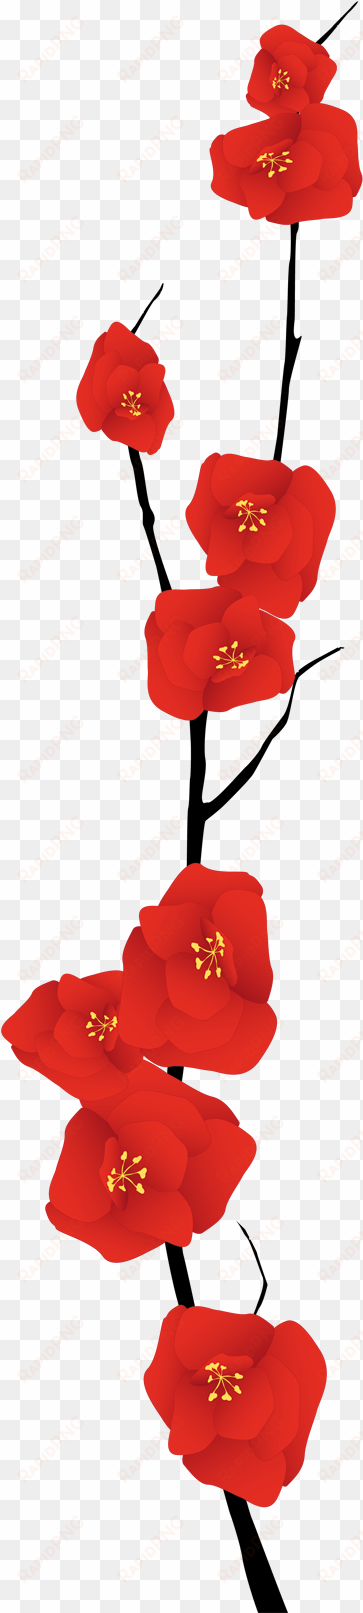 vinilo decorativo rama fina florida - ramas de flores rojas